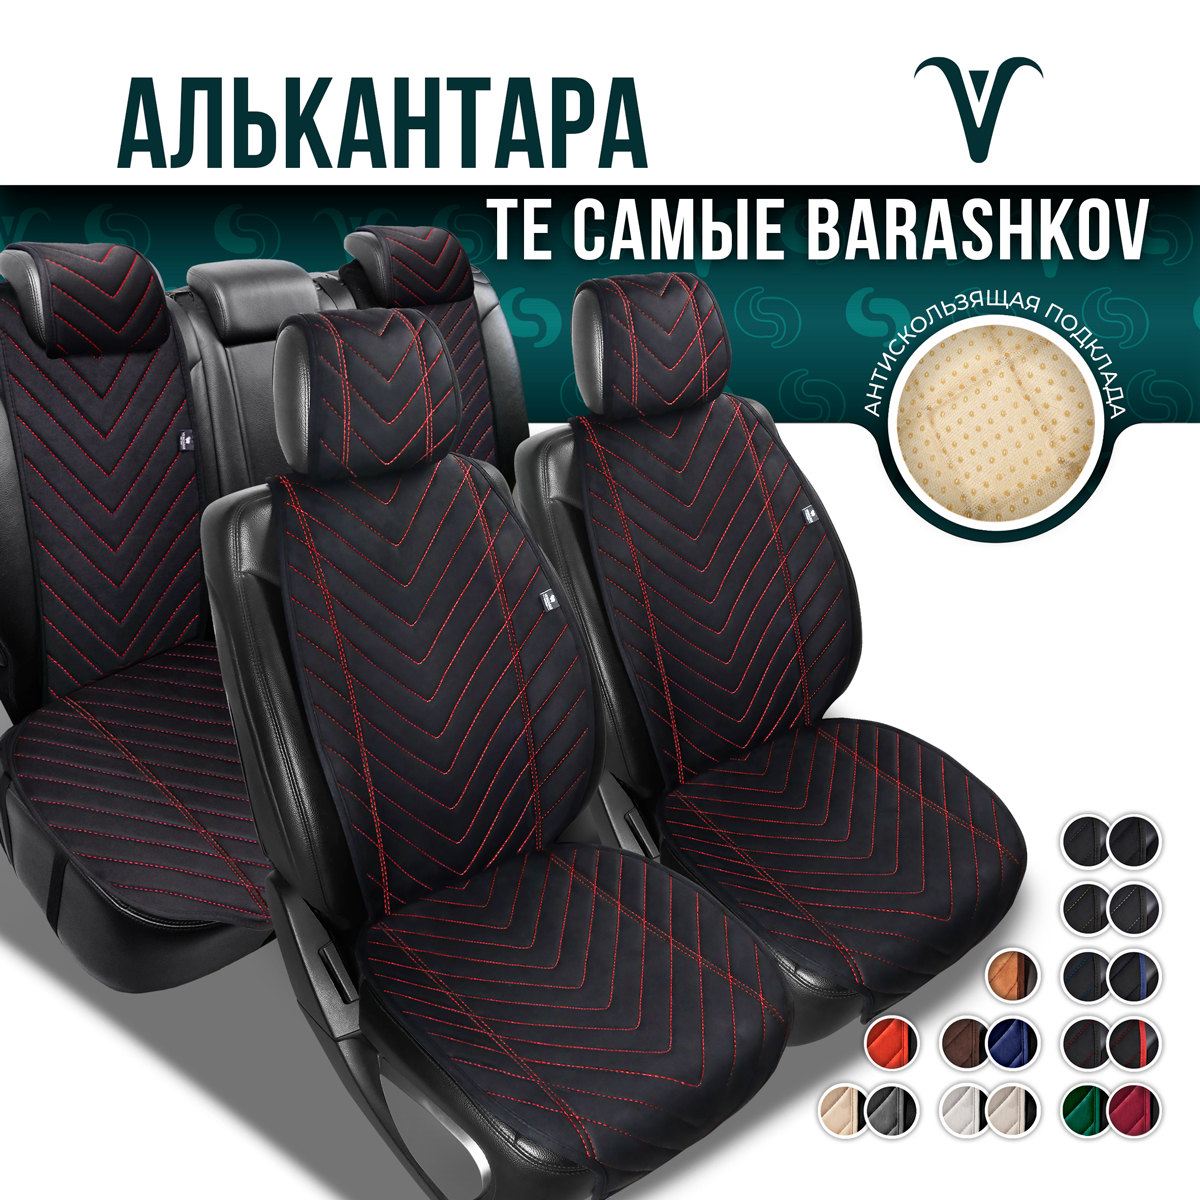 Полный комплект Barashkov накидки из алькантары на сиденья автомобиля. Модель L SV PK.